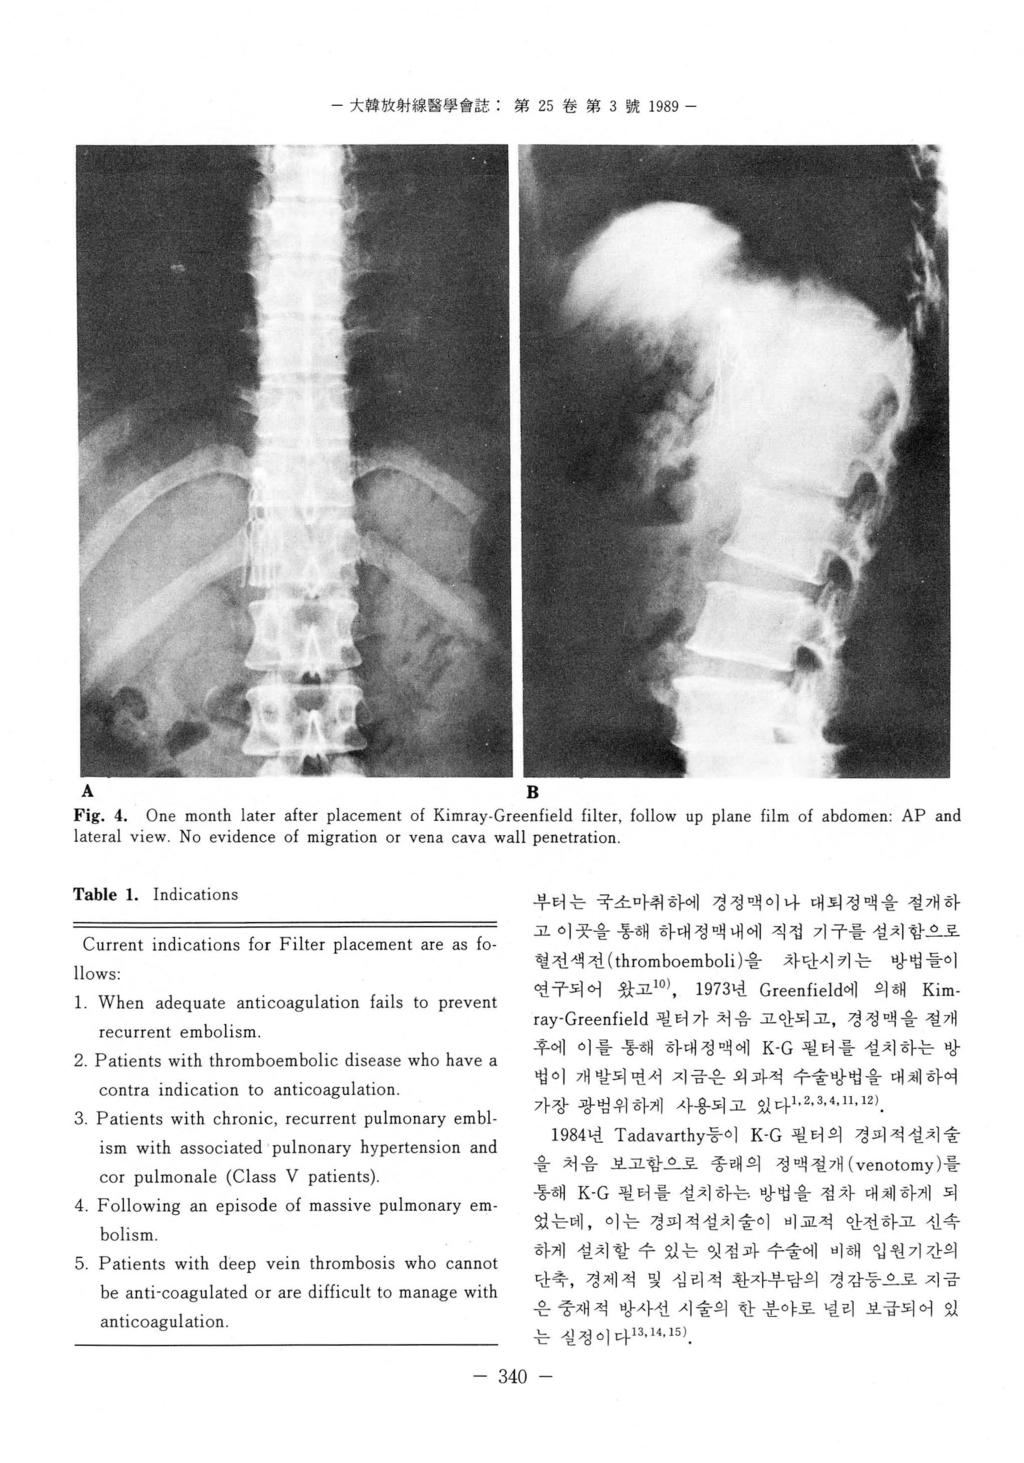 - 大韓放射線醫쩔會誌 : 第 25 卷第 3 號 1989 - B Fig. 4. One month later after placement of Kimray.Greenfield filter, follow up plane film of abdomen: AP and lateral view.